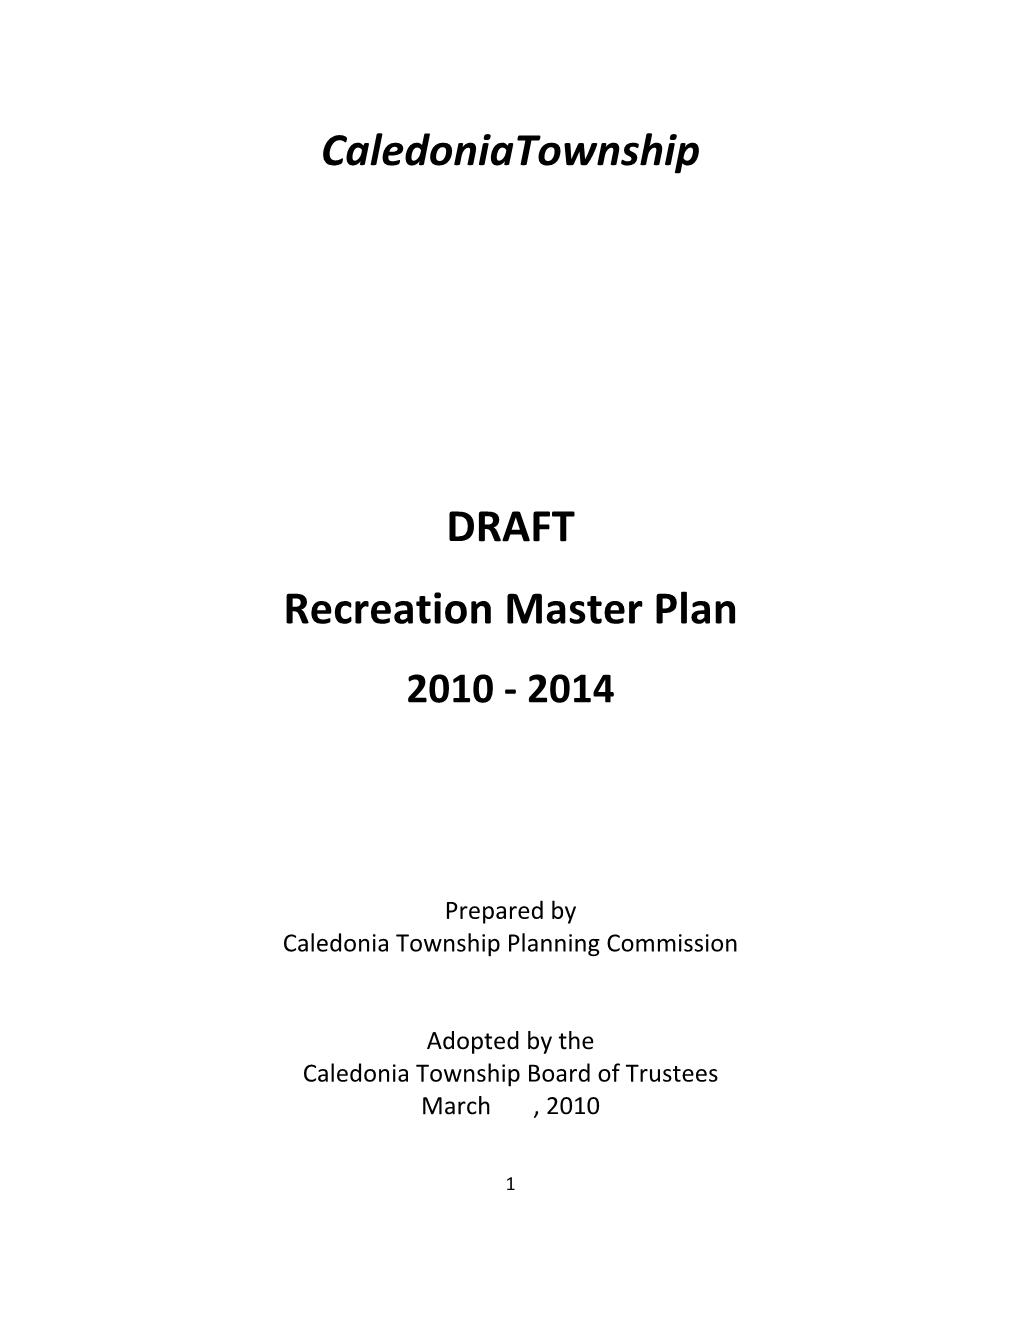 Caledoniatownship DRAFT Recreation Master Plan